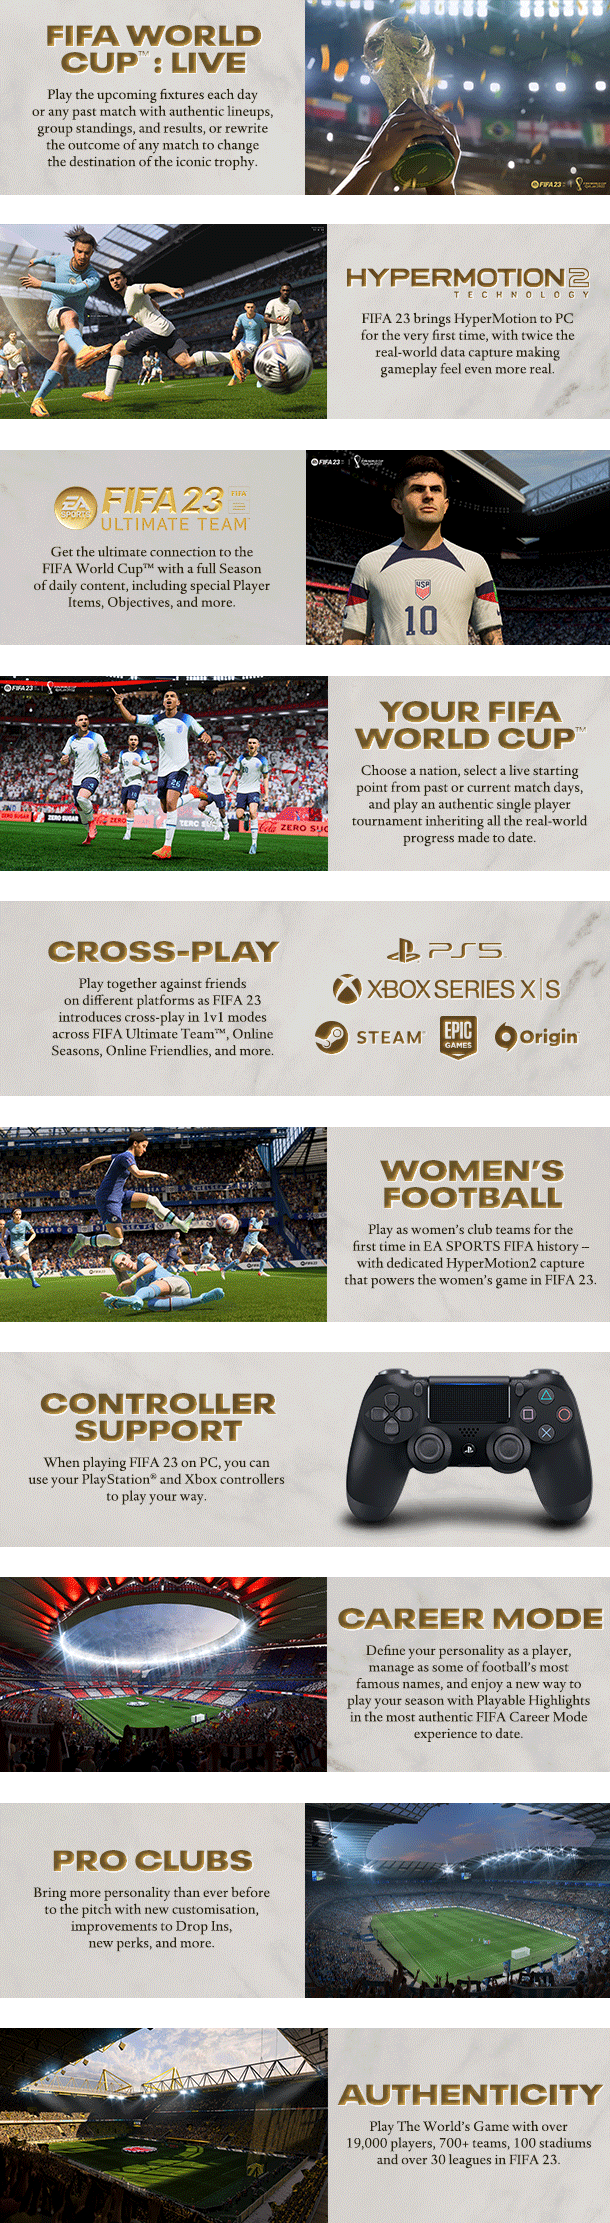 EA SPORTS FIFA 23 pode ser jogado de graça na Steam (PC